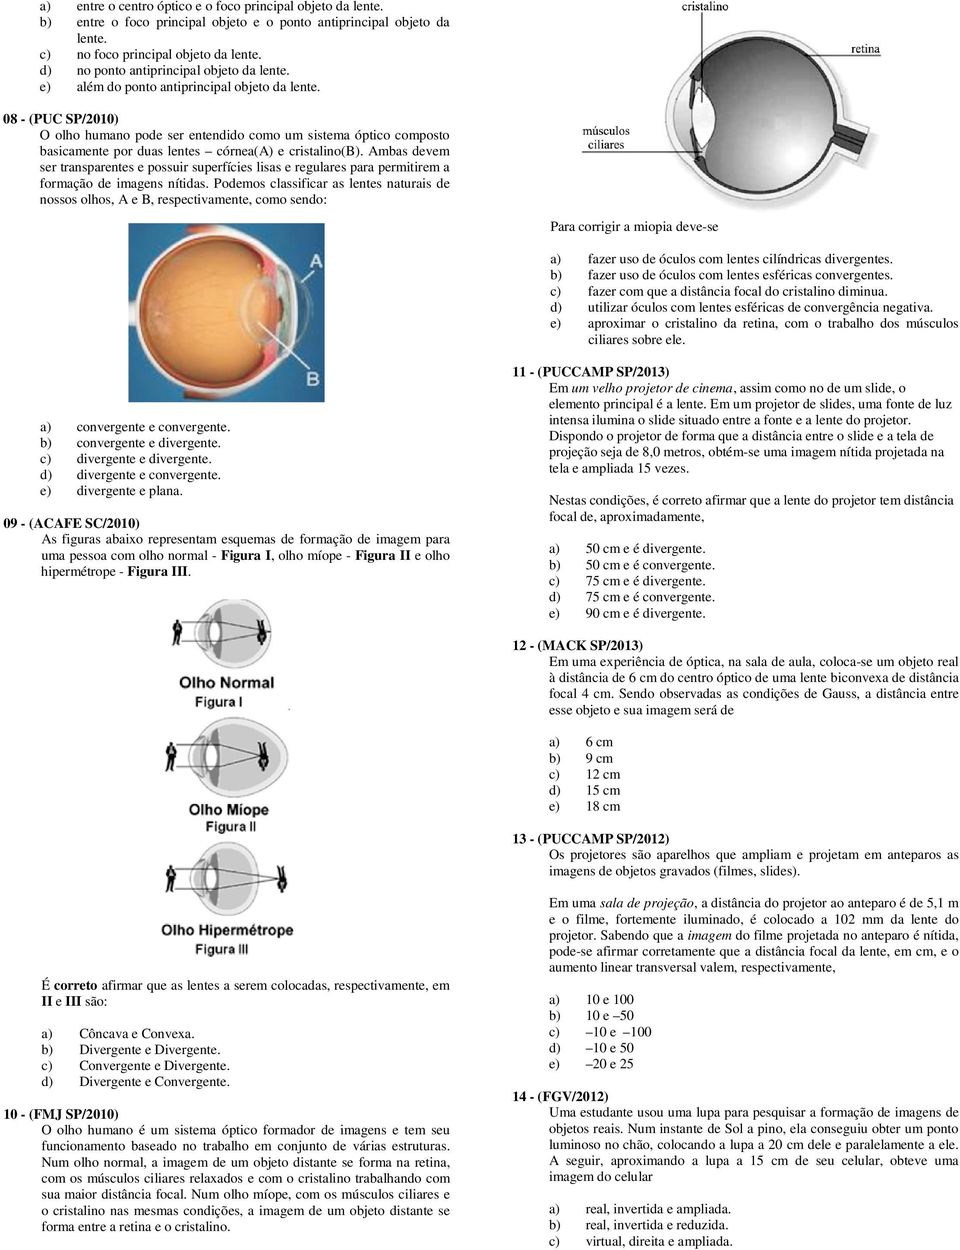 08 - (PUC SP/2010) O olho humano pode ser entendido como um sistema óptico composto basicamente por duas lentes córnea(a) e cristalino(b).